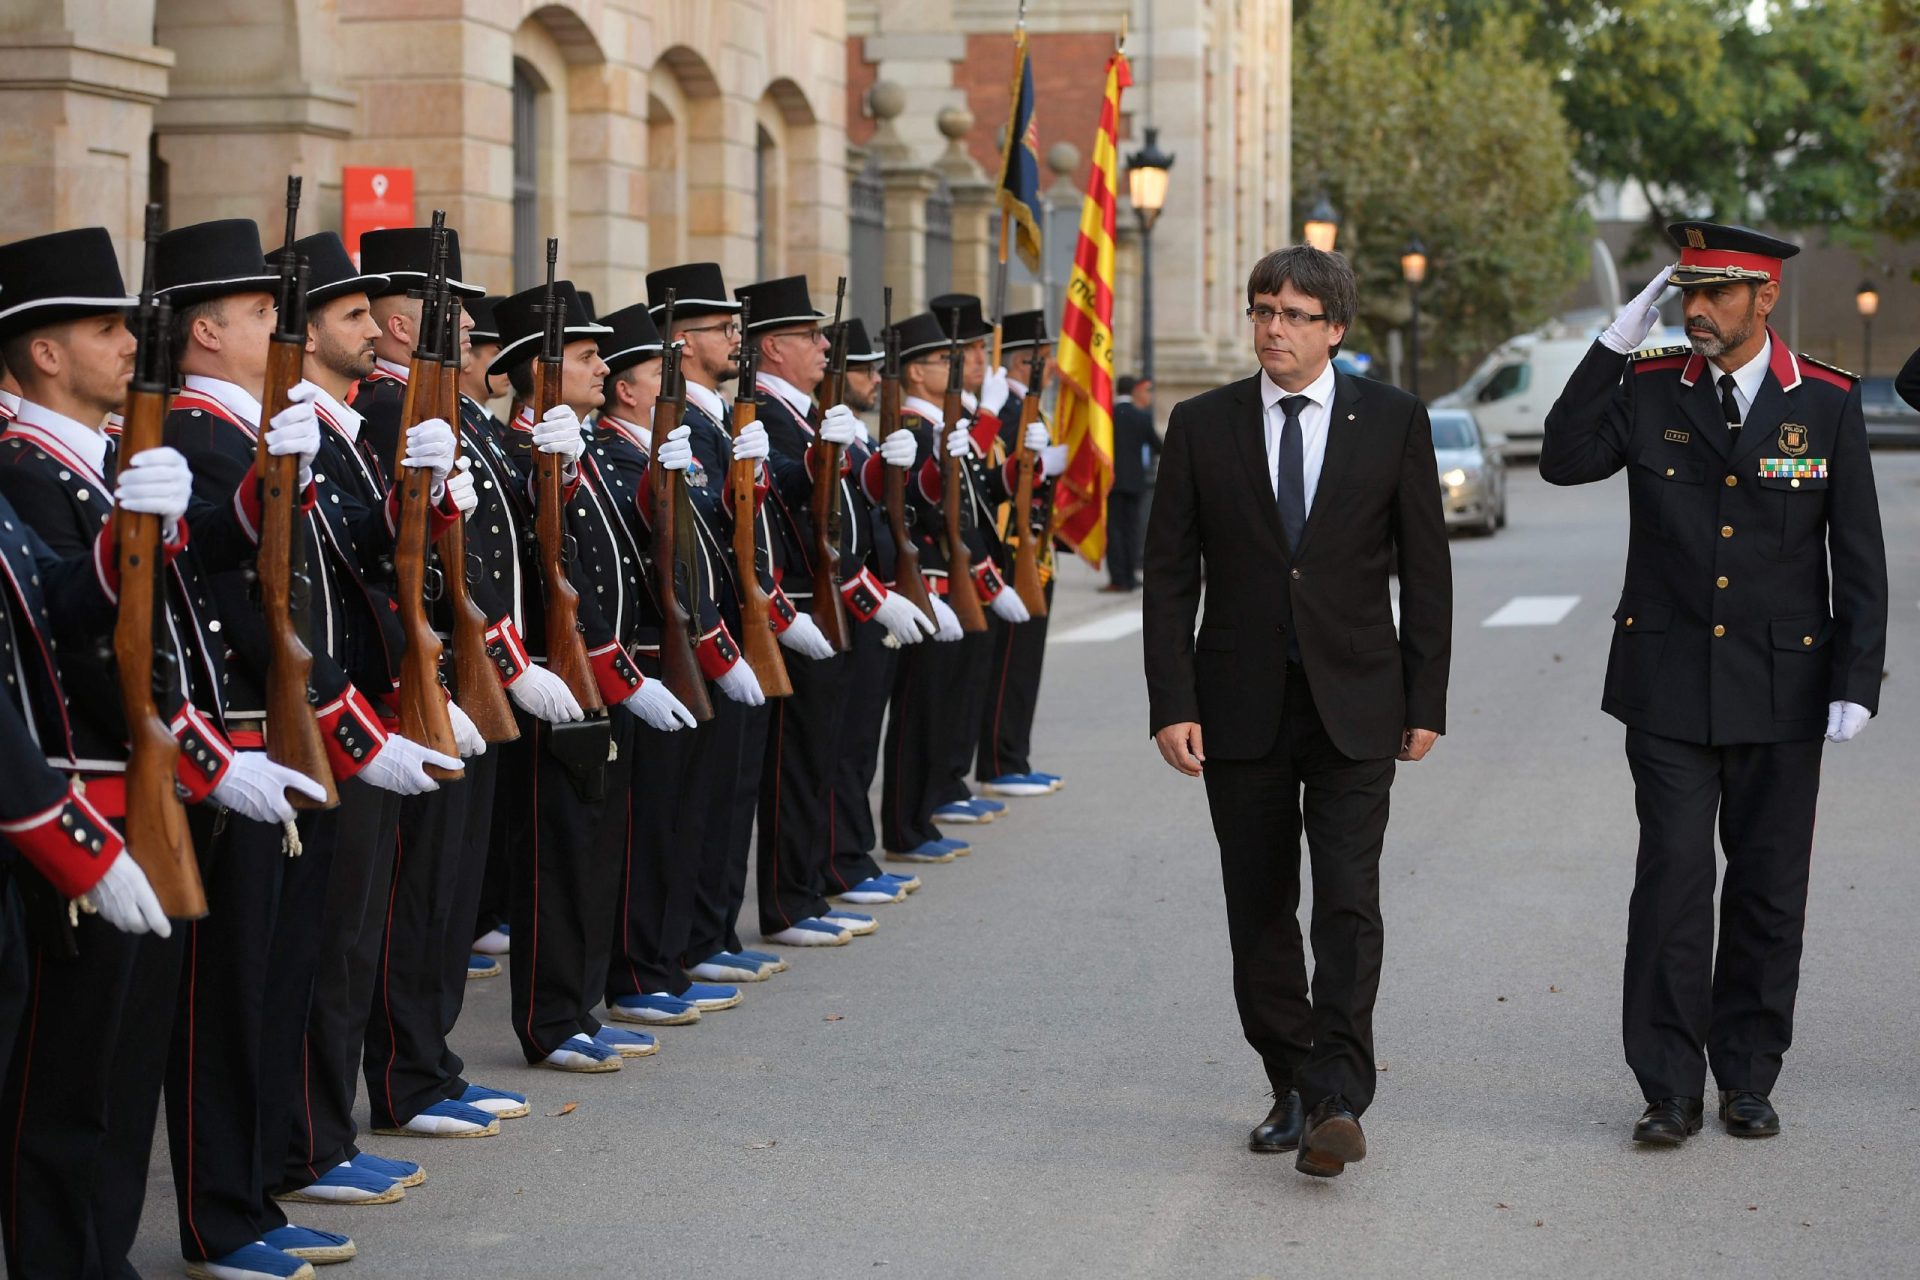 Madrid manda o exército para a Catalunha